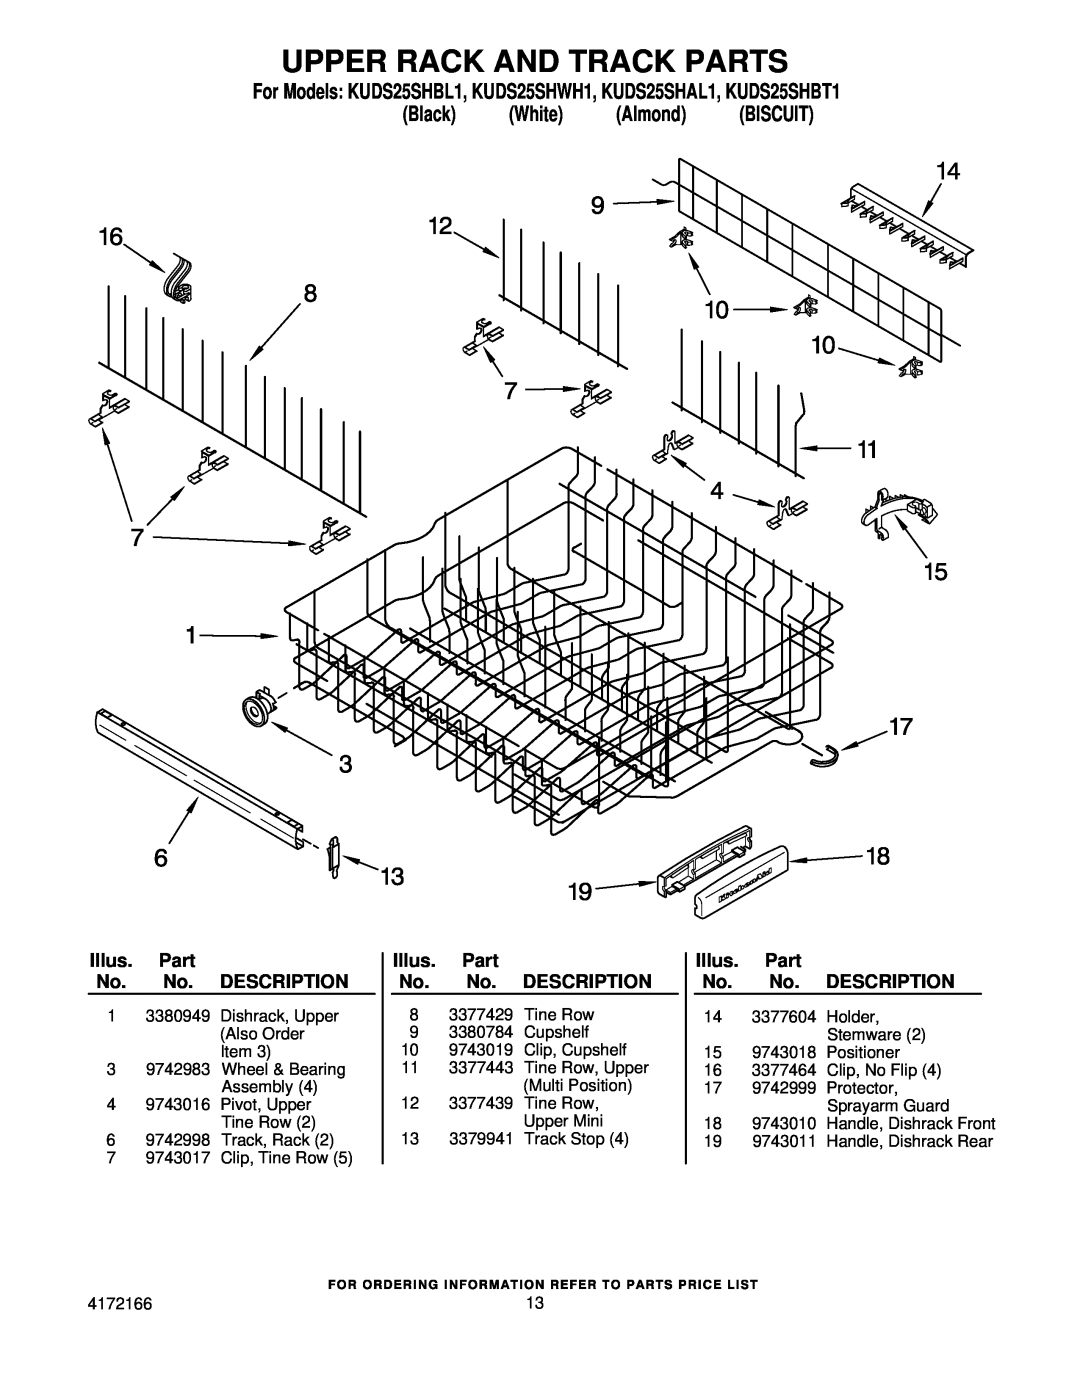 KitchenAid manual Upper Rack And Track Parts, For Models KUDS25SHBL1, KUDS25SHWH1, KUDS25SHAL1, KUDS25SHBT1 